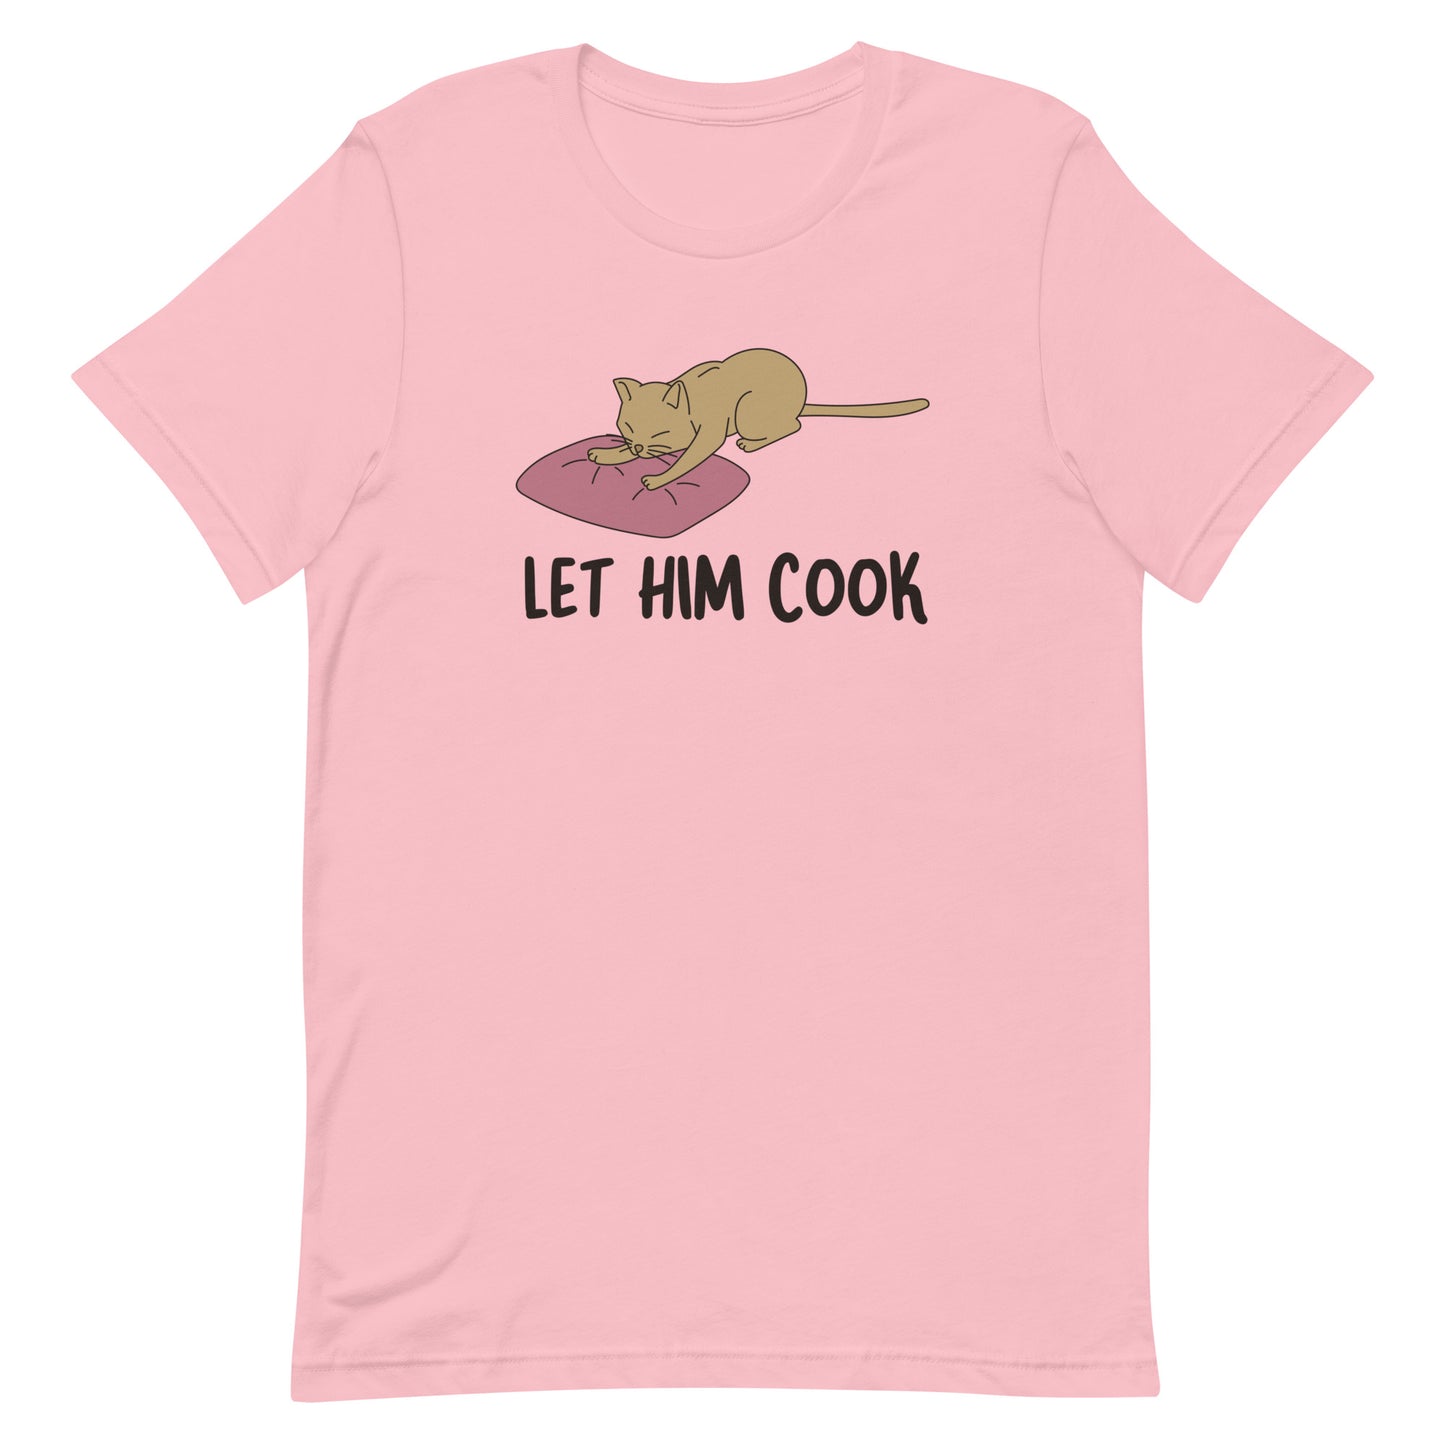 Let Him Cook Unisex t-shirt